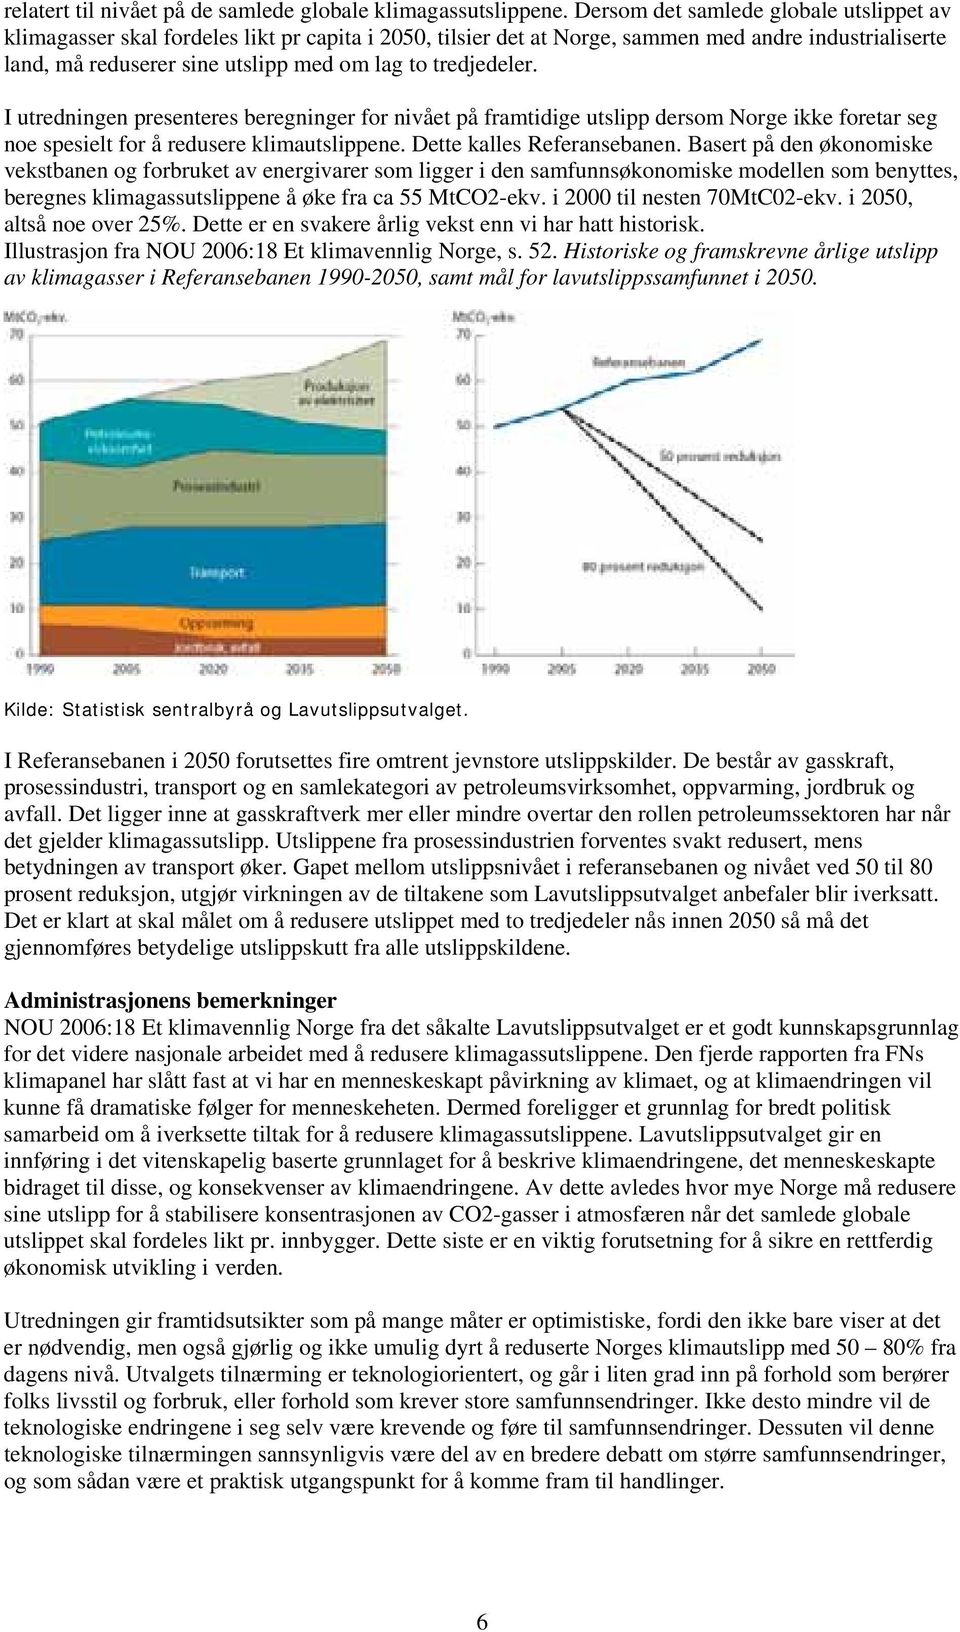 tredjedeler. I utredningen presenteres beregninger for nivået på framtidige utslipp dersom Norge ikke foretar seg noe spesielt for å redusere klimautslippene. Dette kalles Referansebanen.